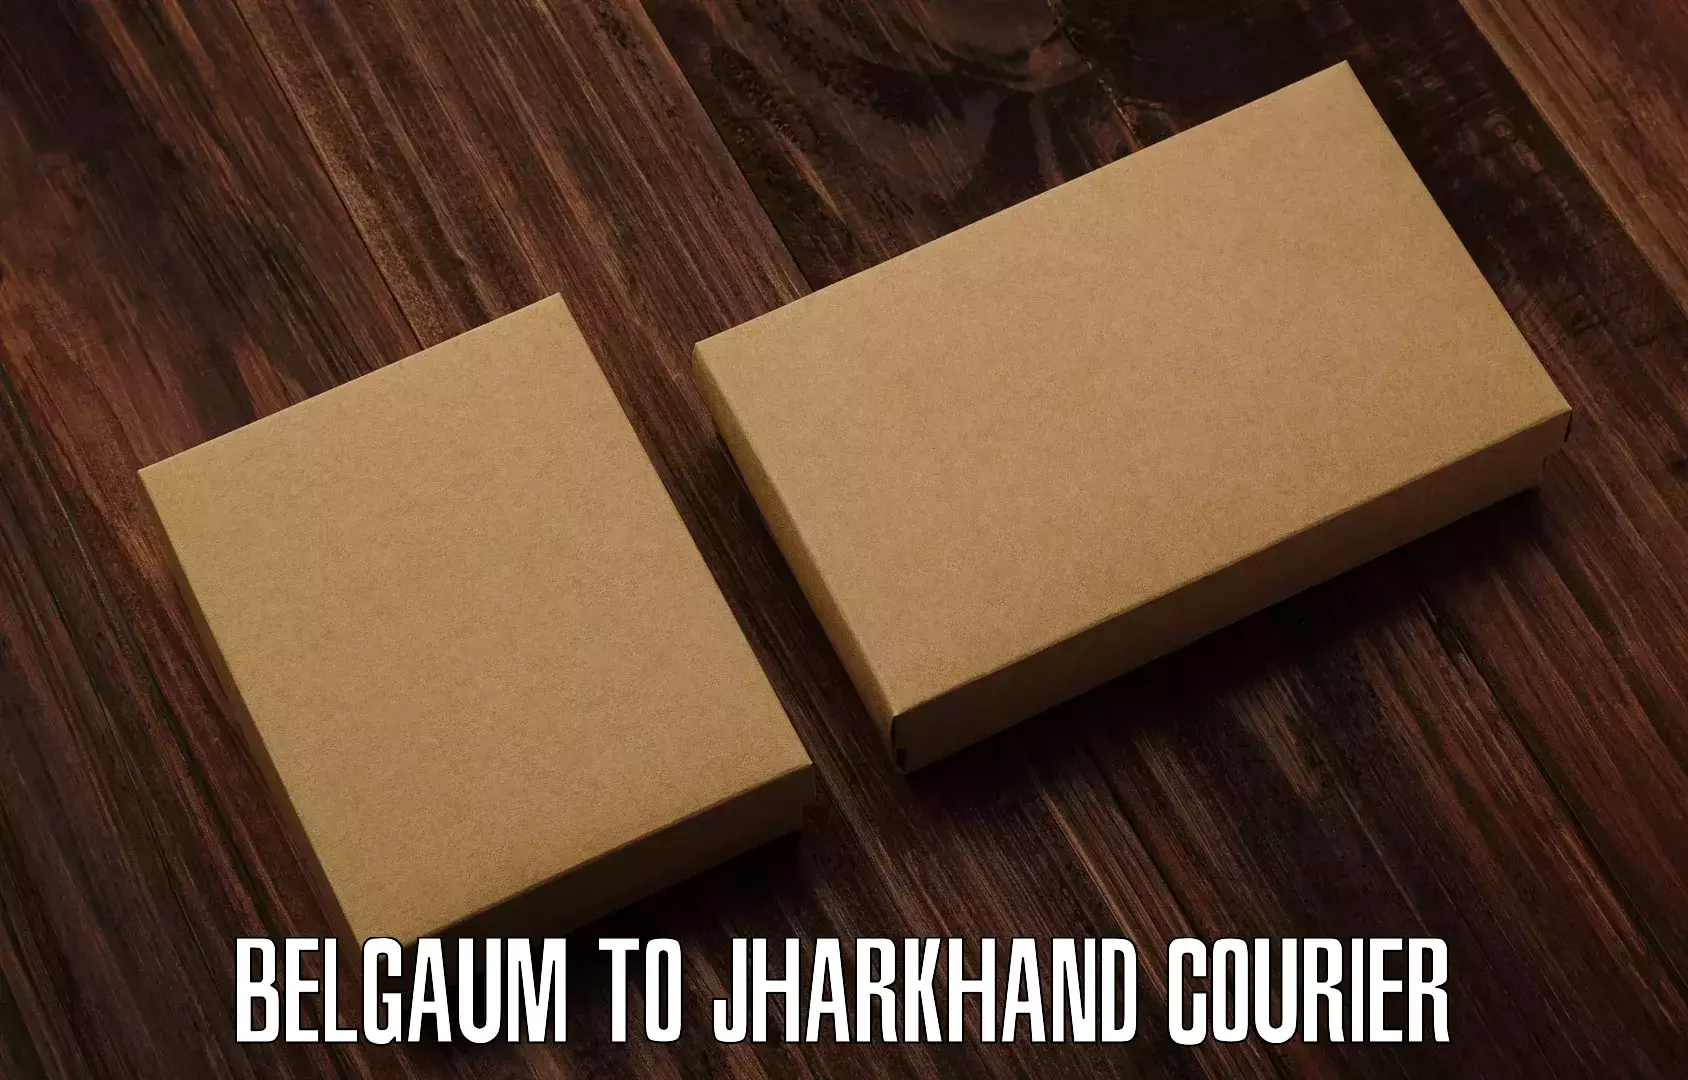 Full-service courier options Belgaum to Chandankiyari